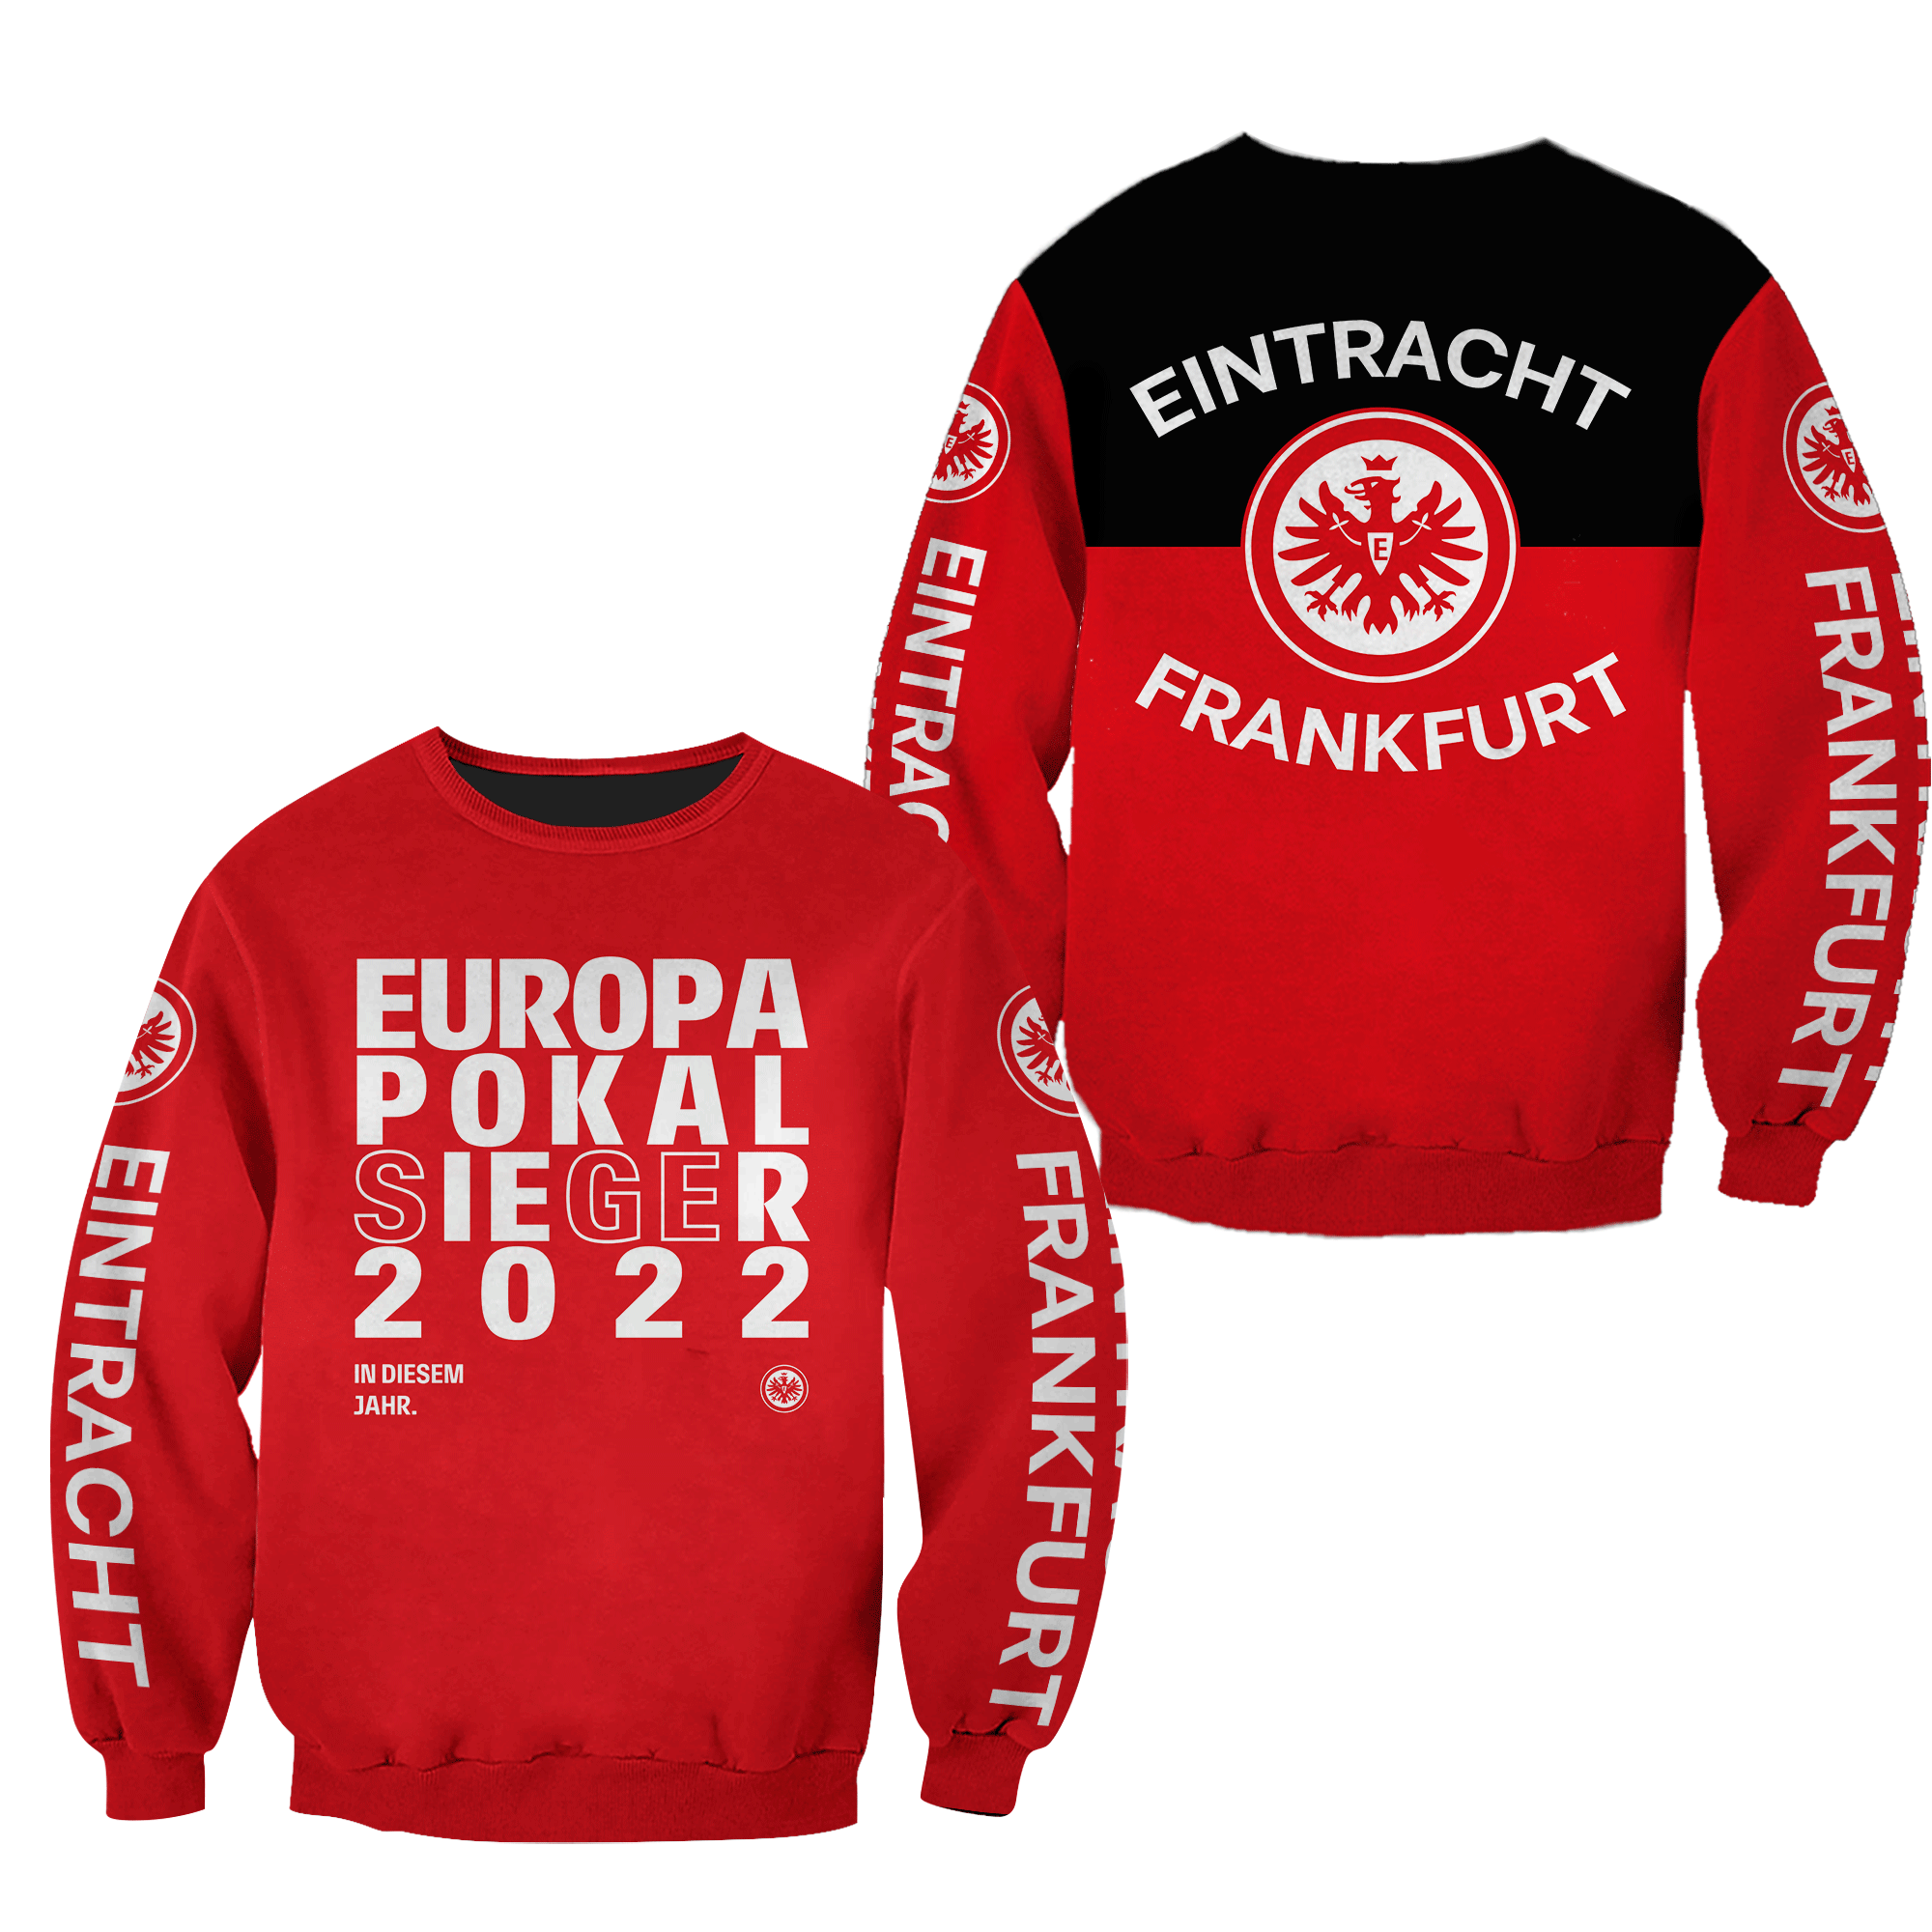 HOT Eintracht Frankfurt Europapokal Sieger 2022 Red 3D Print Hoodie, Shirt1